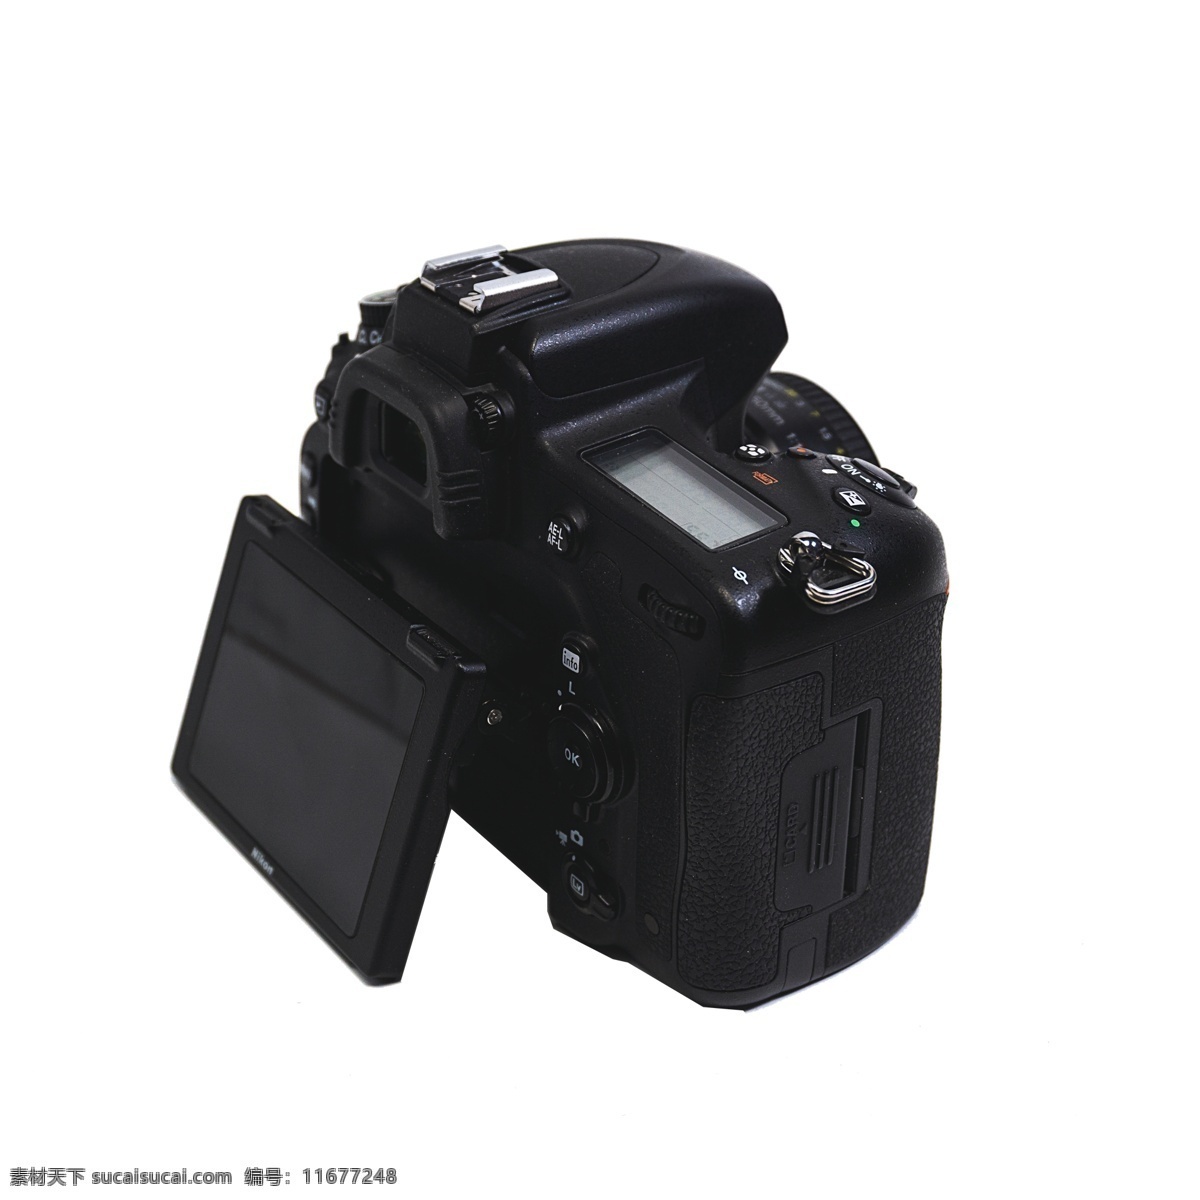 黑色 数码相机 免 抠 图 相机 黑色相机 电子产品 数码照相机 家用照相机 旅行相机 黑色数码相机 免抠图